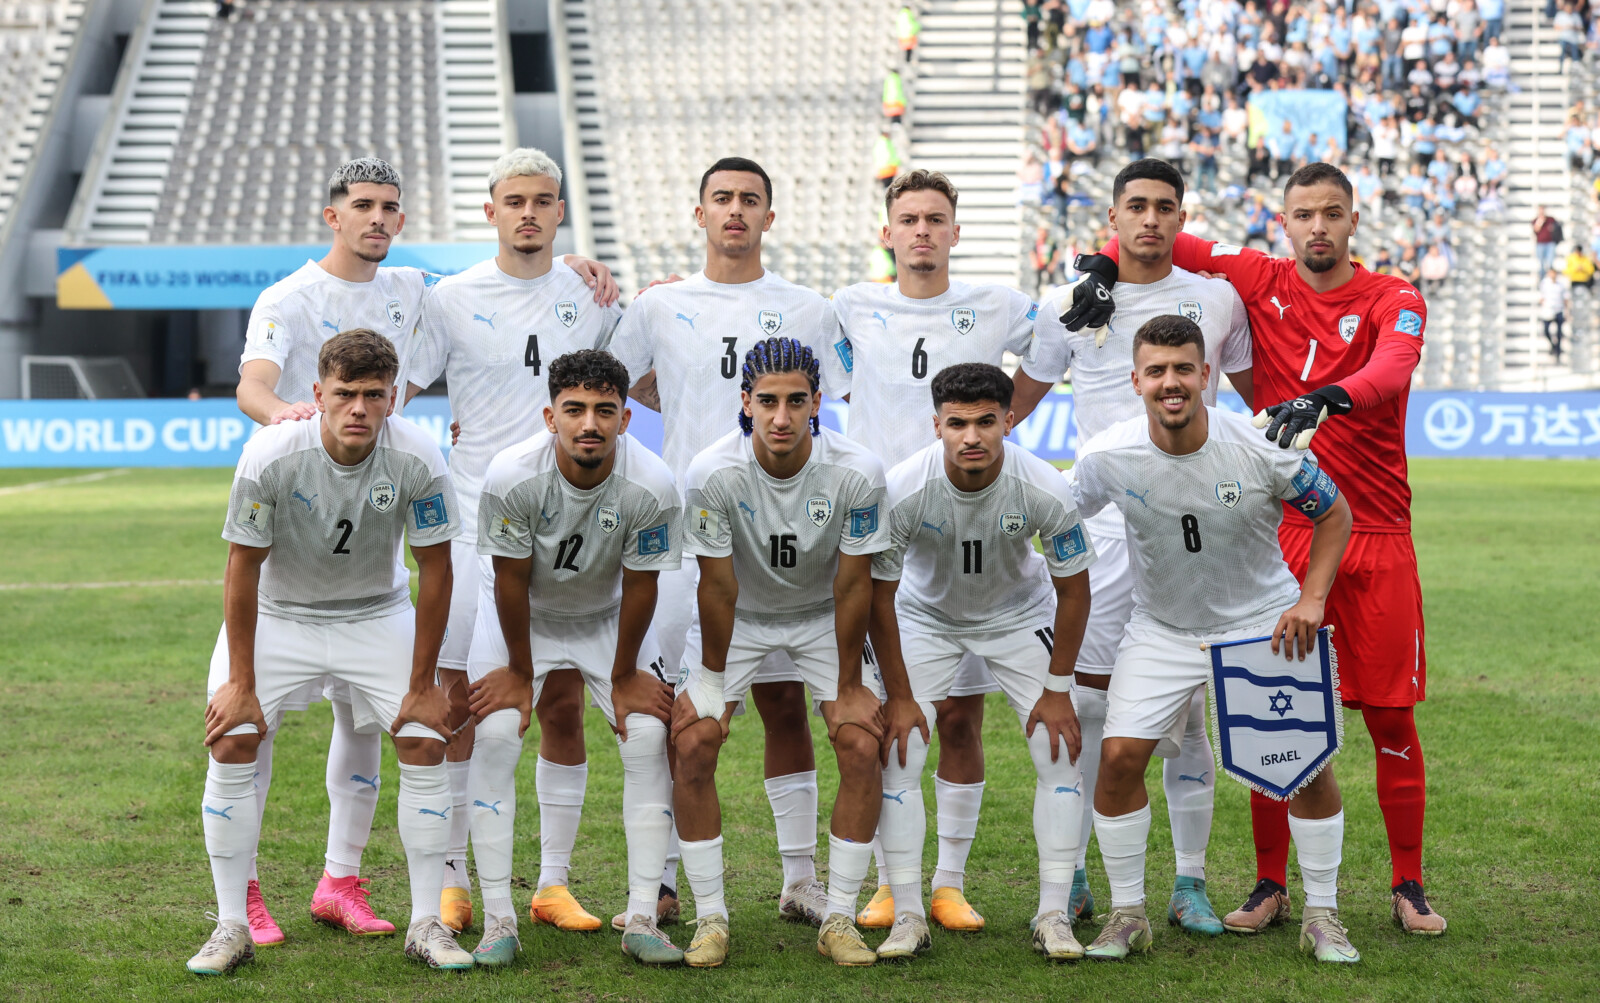 נבחרת ישראל עד גיל 20 בחצי גמר המונדיאליטו (צילום: אסי קיפר, ההתאחדות לכדורגל בישראל)